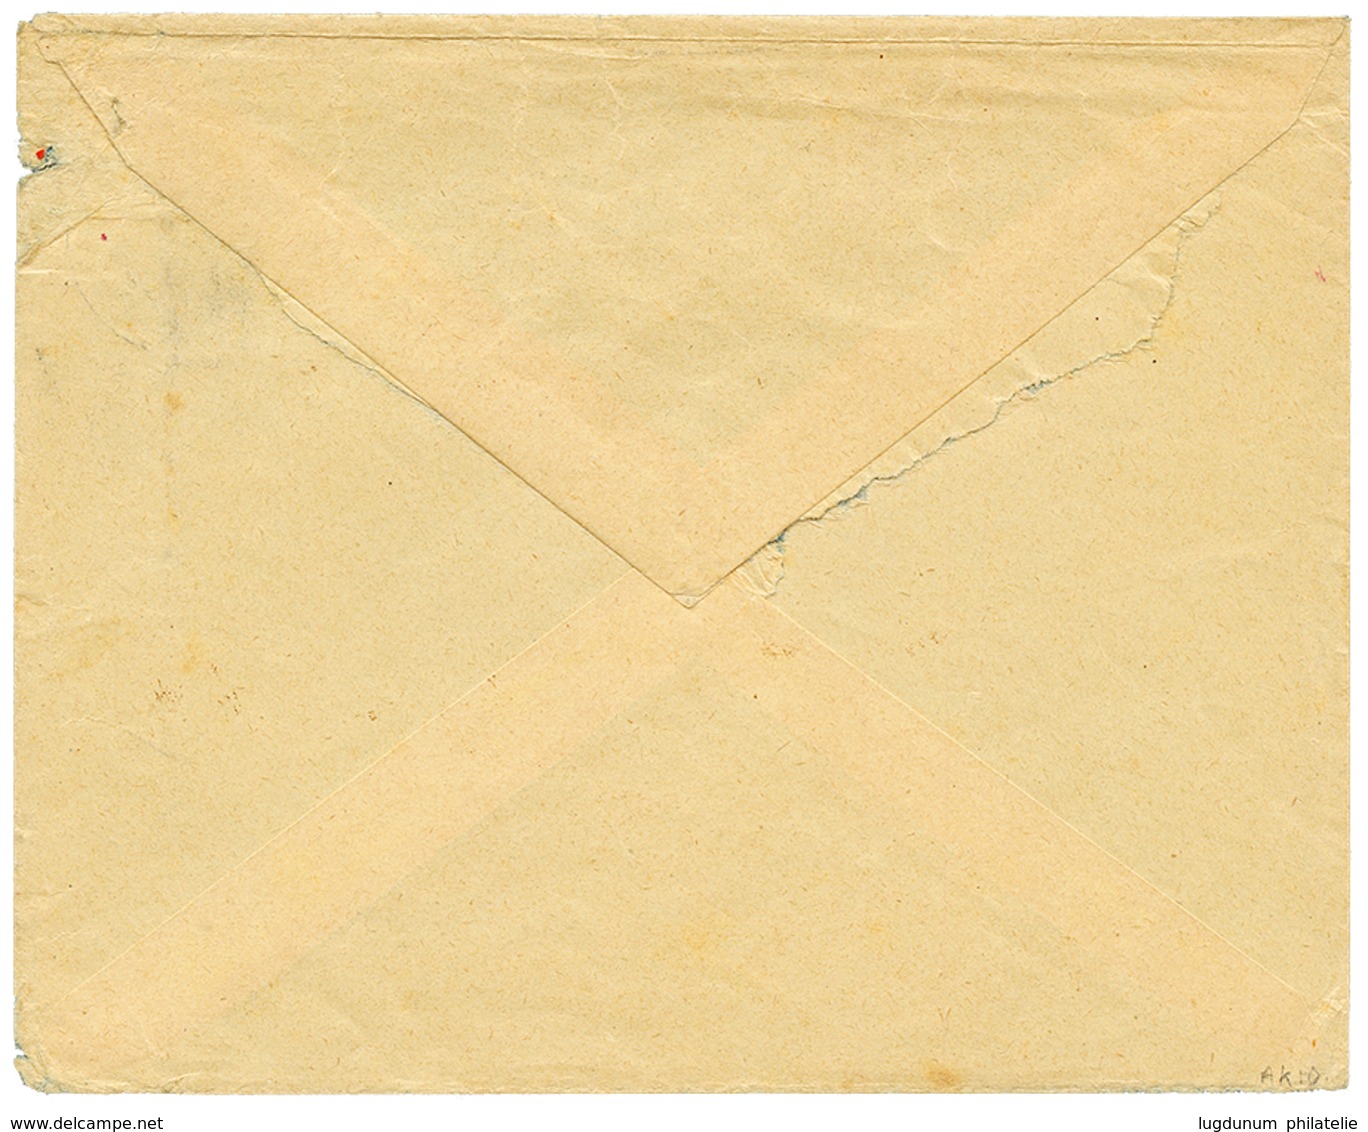 1069 1910 4h(x2) Canc. TAVETA DEUTSCHE FELDPOST + Red Cachet ZENZUR PASSIERT DEUTSCH OSTAFRIKA On Envelope To BERLIN. Vf - China (offices)